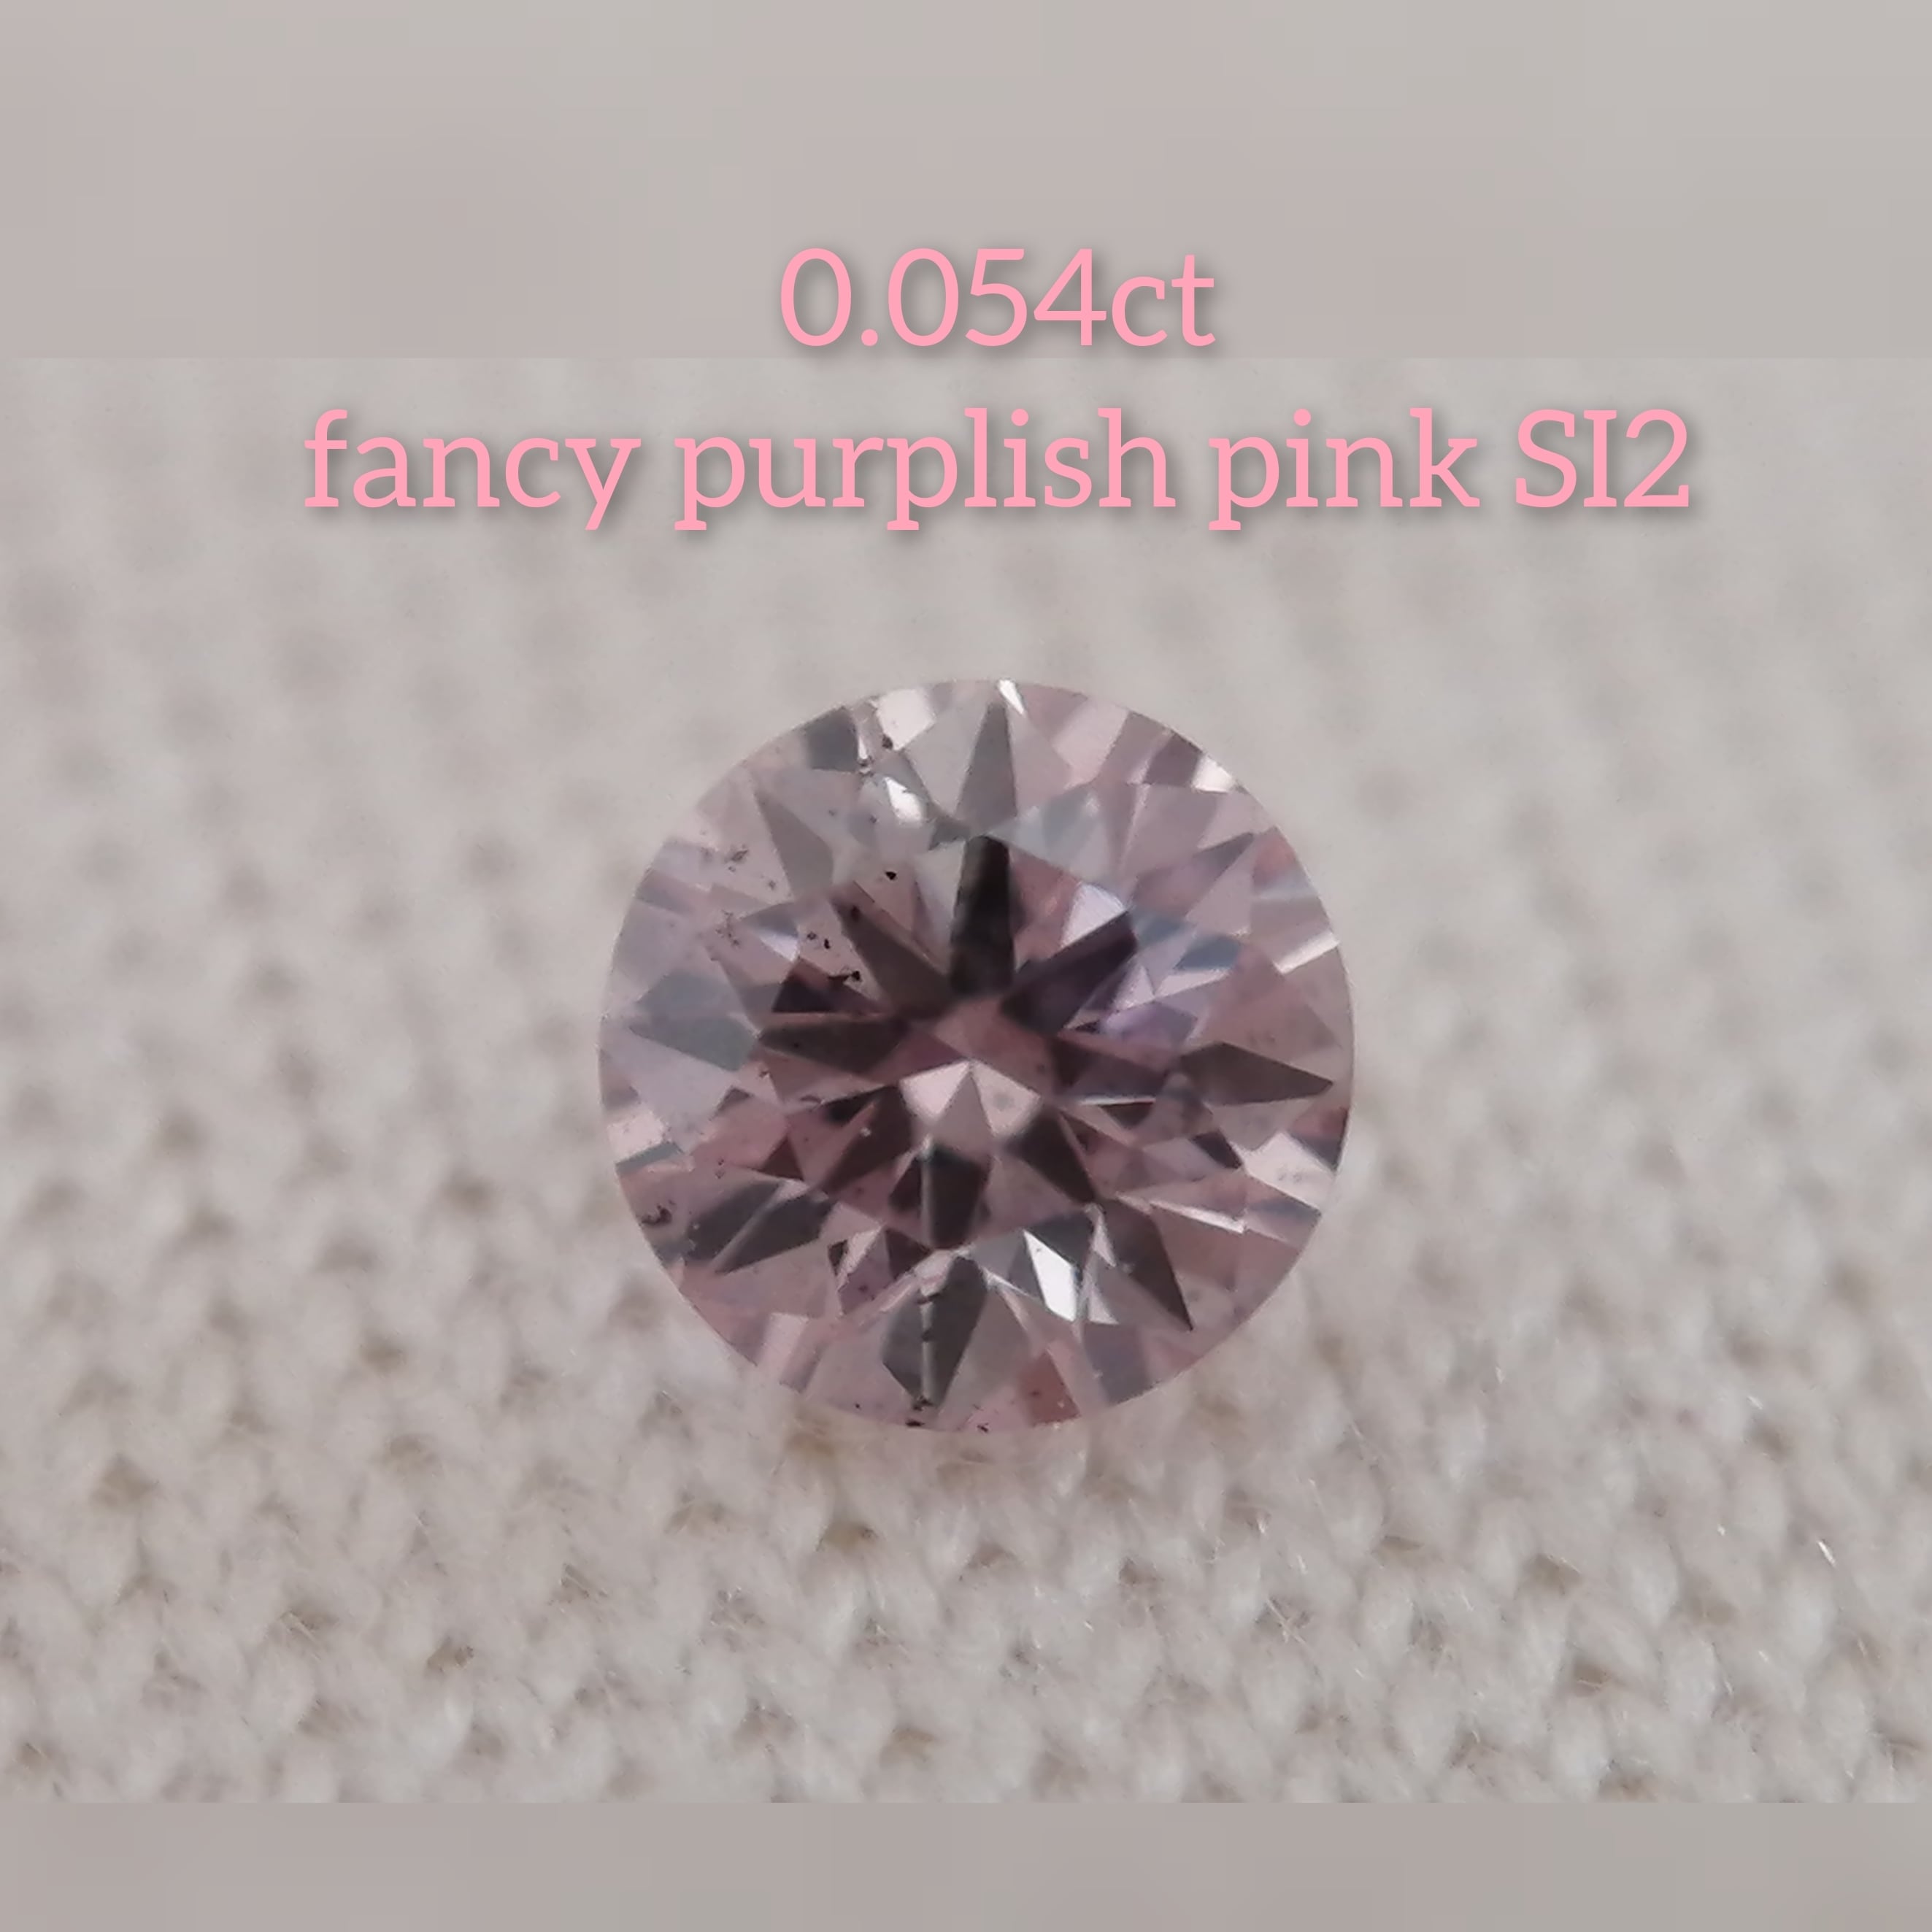 ピンクダイヤモンドルース 0.054ct fancy purplish pink SI2(CGL) | fancy color